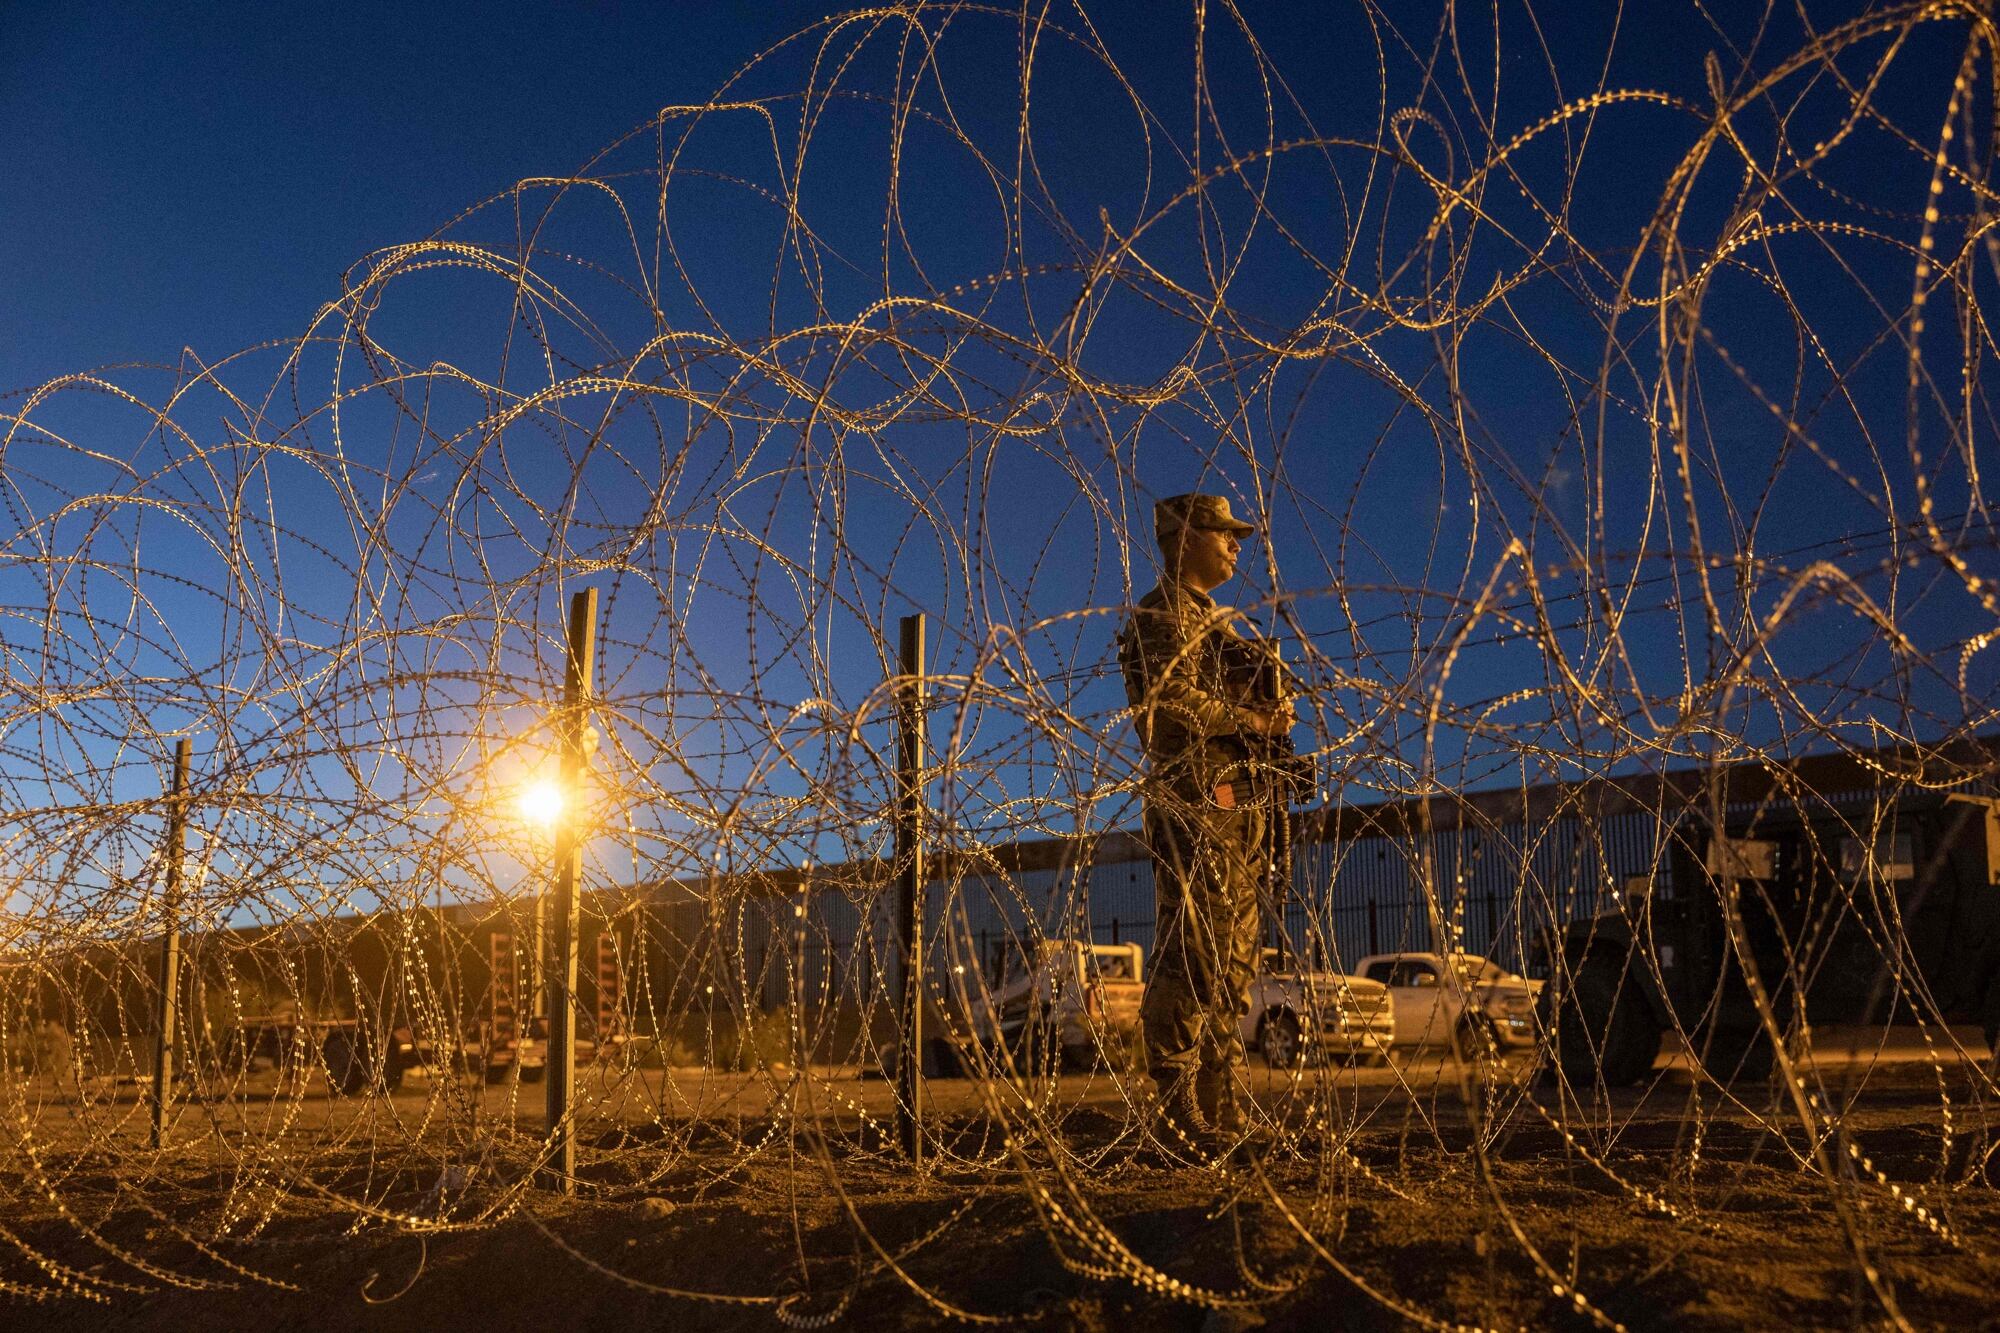 Archivo.- Un soldado de la Guardia Nacional de Texas permanece en vigilia en un campamento improvisado de migrantes cerca de la valla fronteriza entre Estados Unidos y México el 11 de mayo de 2023 en El Paso, Texas